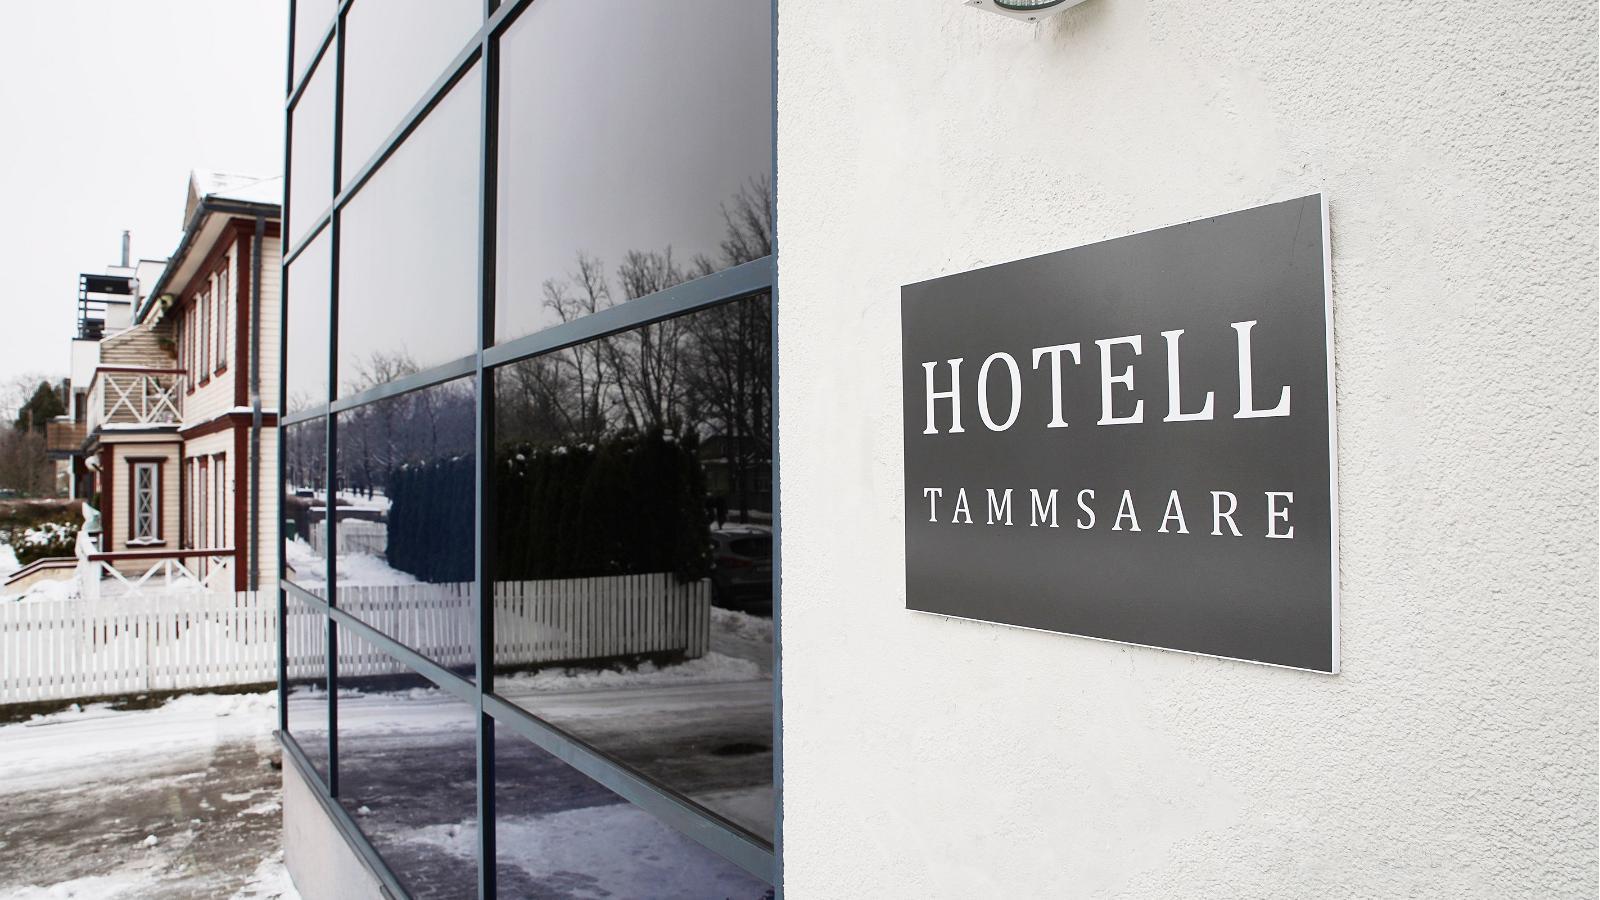 Hotell Tammsaare